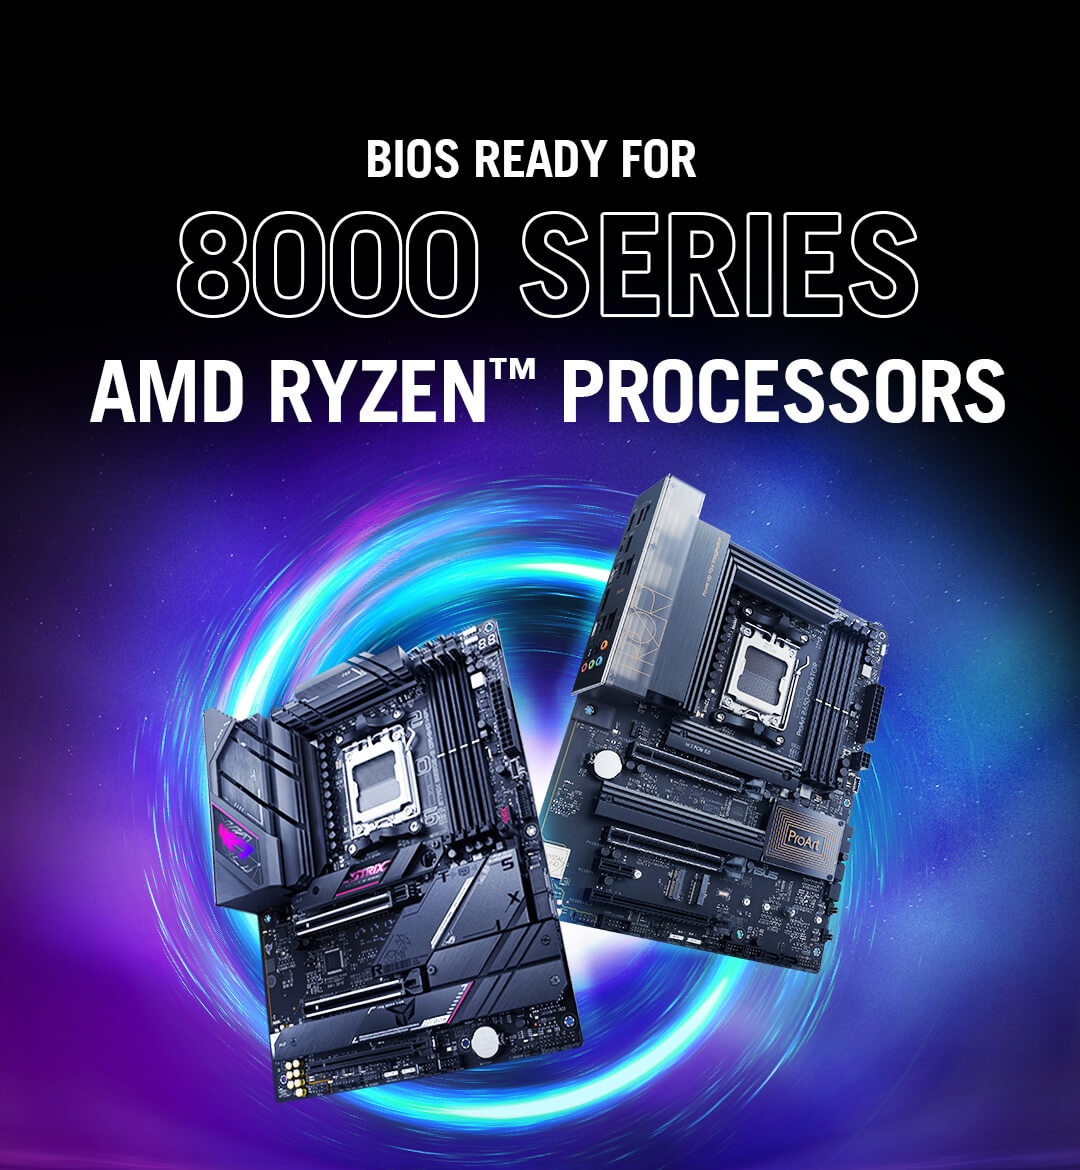 Afbeelding twee B650 moederborden met BIOS Ready voor 8000-serie AMD Ryzen™ processors